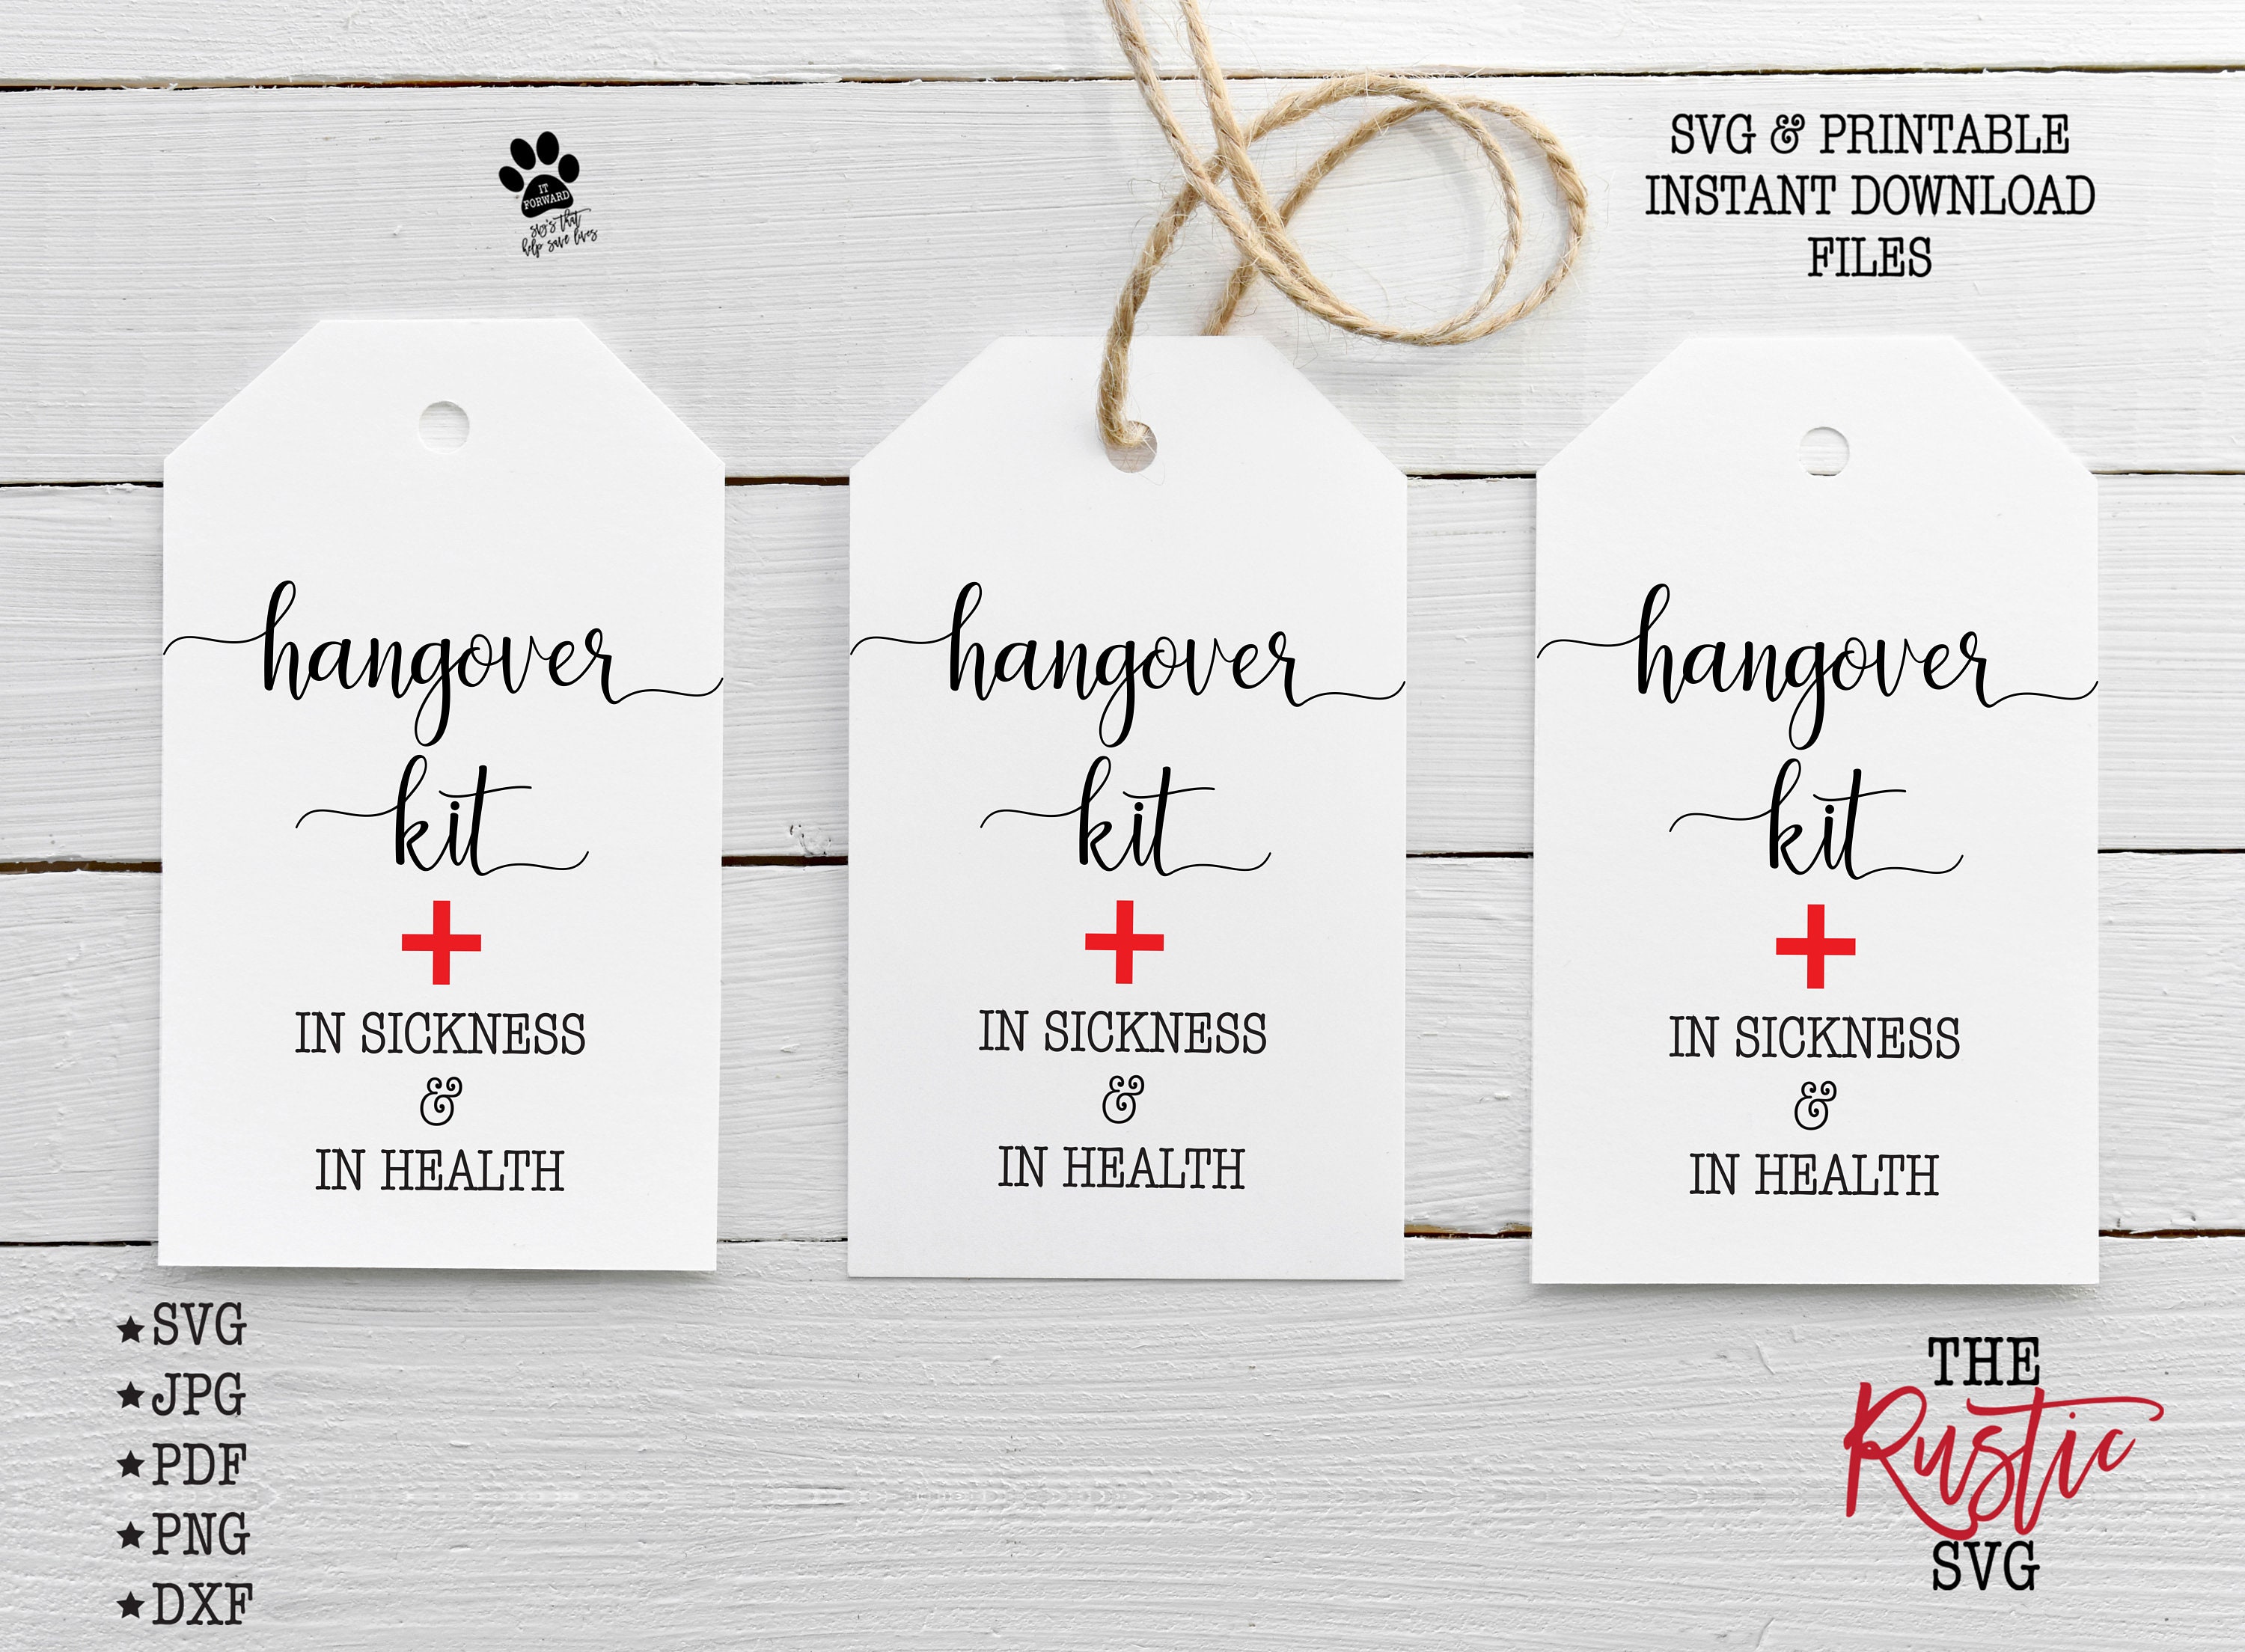 hangover-kit-tags-printable-hangover-kit-tags-wedding-etsy